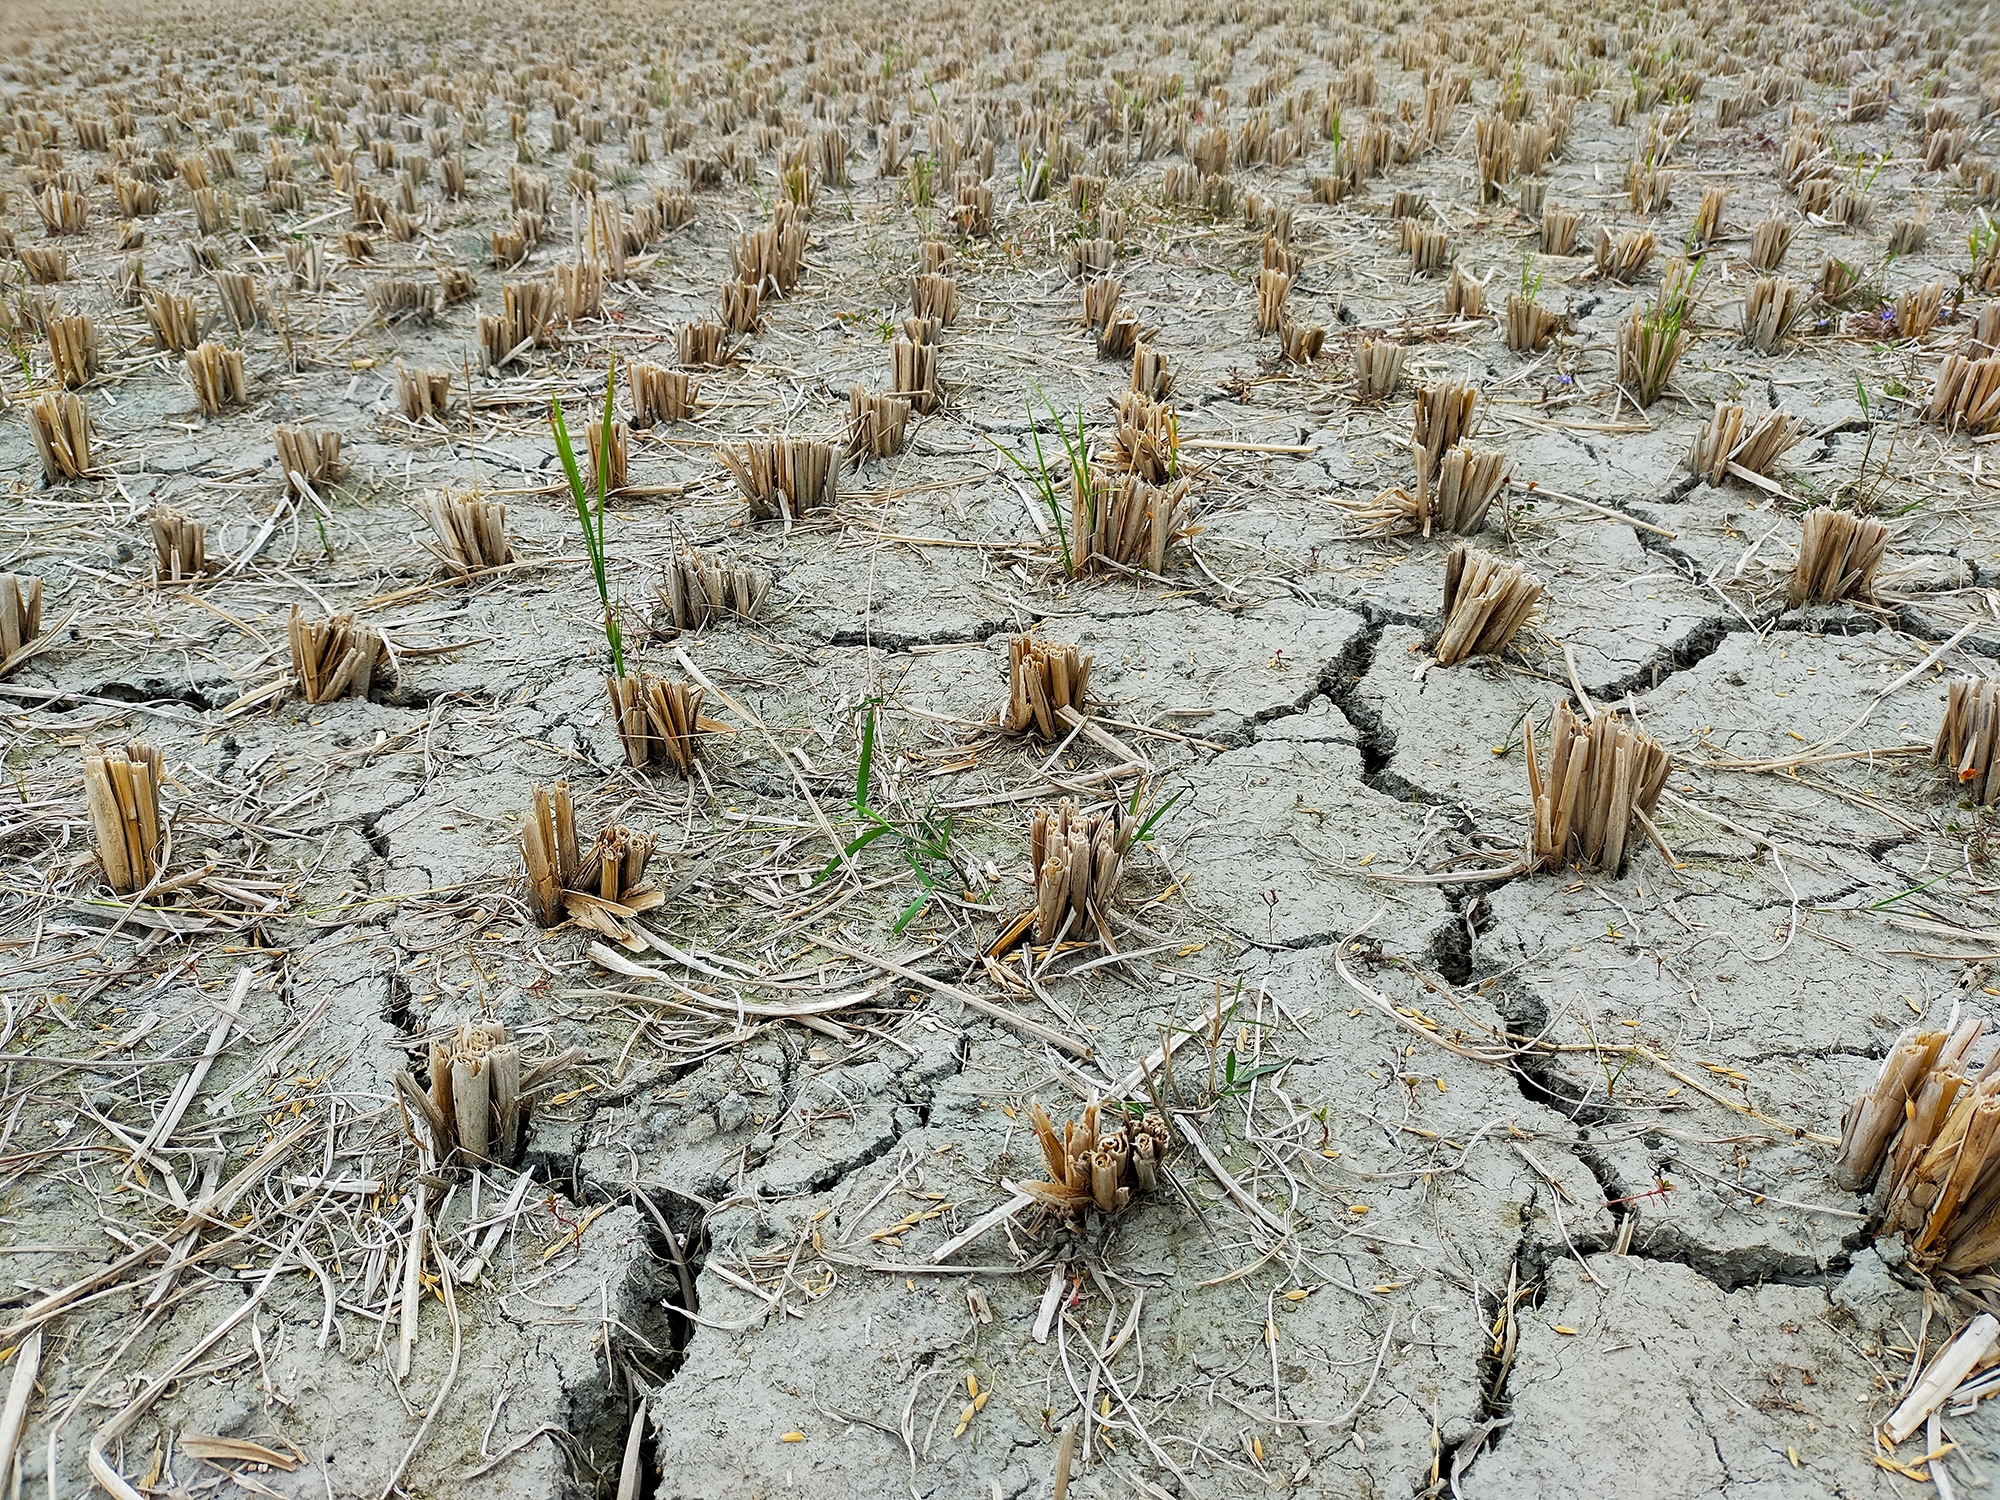 El cambio climático aumenta las probabilidades de que la sequía empeore en muchas partes del mundo en las próximas décadas. Créditos: Md. Hasanuzzaman Himel / Unsplash